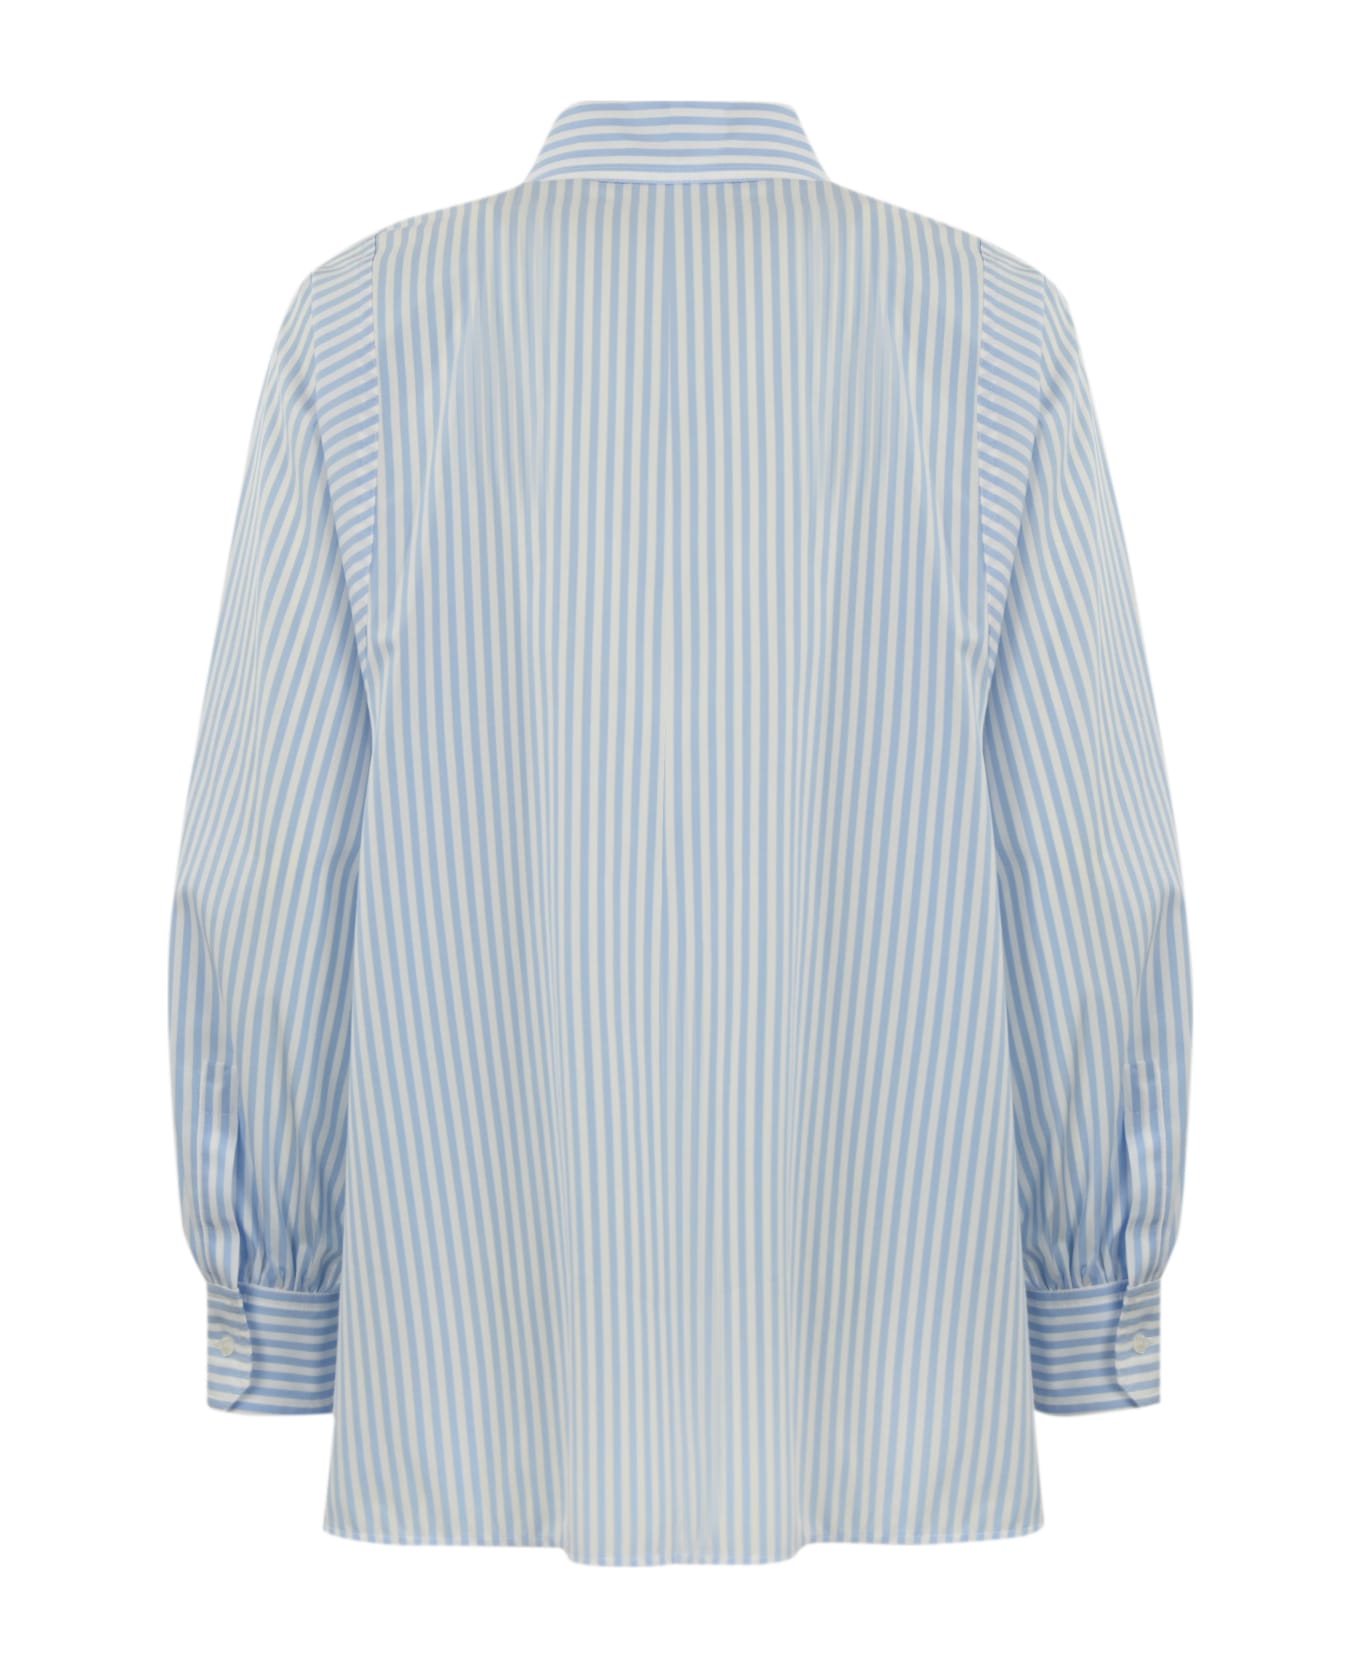 Weekend Max Mara Striped Cotton Shirt - Riga pari cielo シャツ